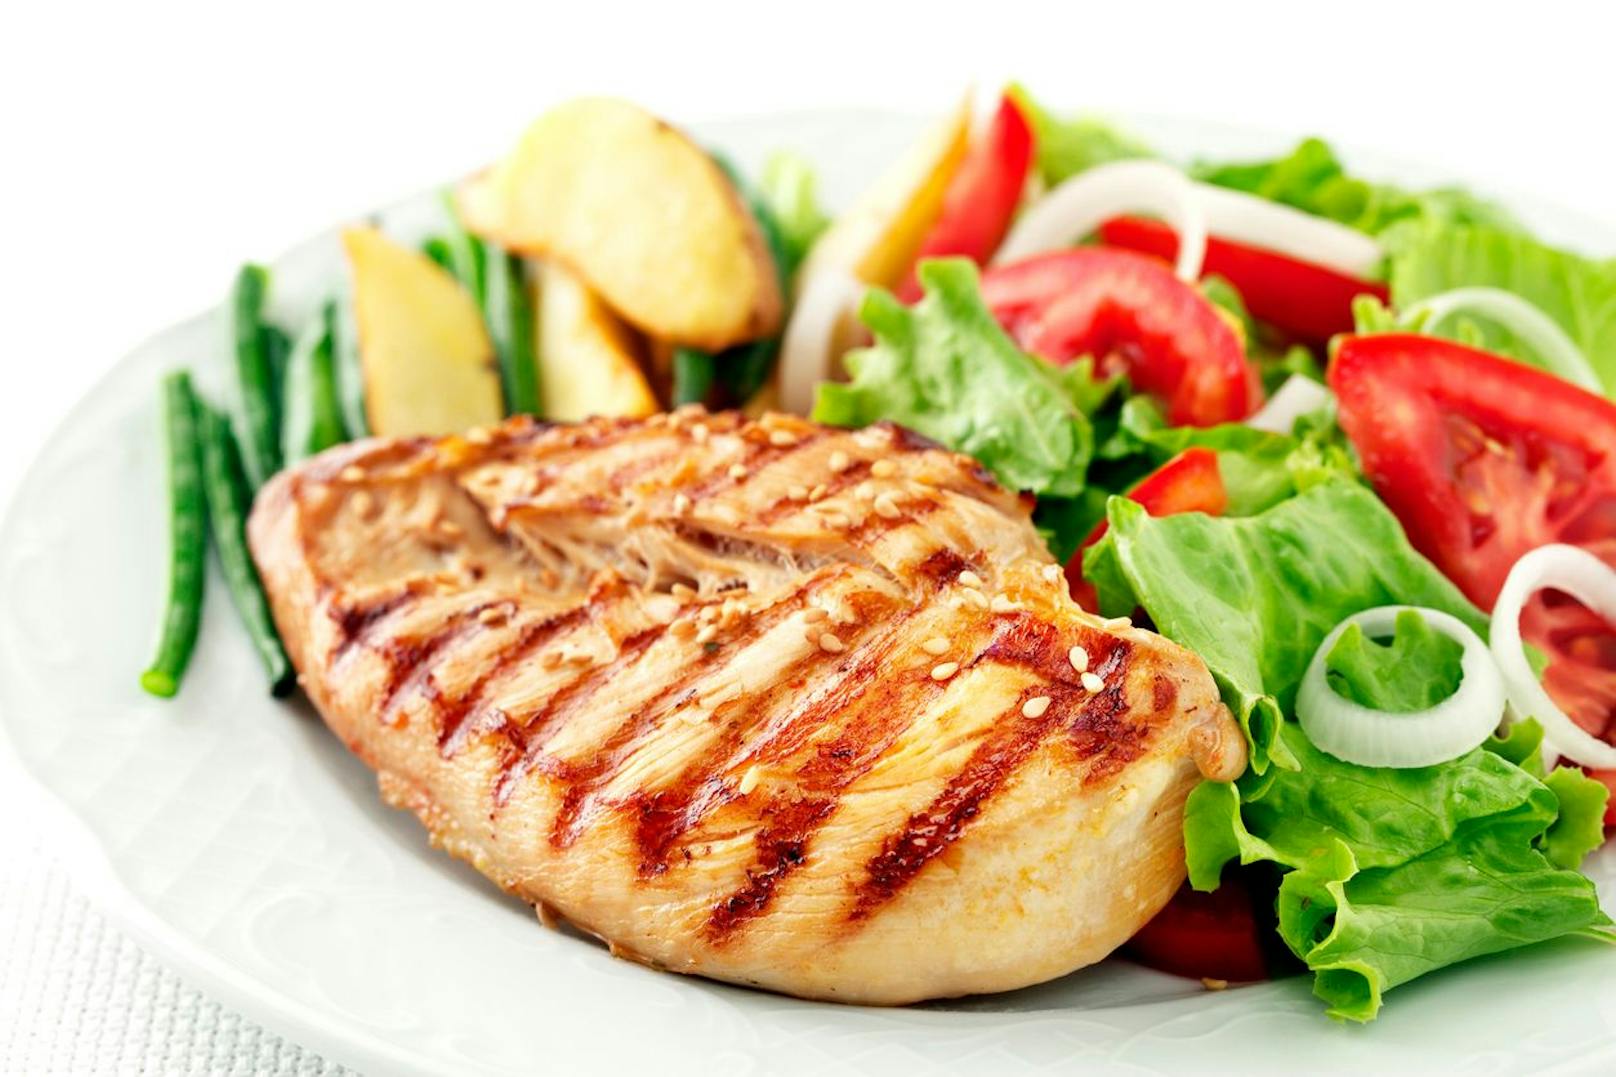 Kartoffeln, Salat und mageres Fleisch wie Hühnerbrust sind Lebensmittel mit einer niedrigen Energiedichte, die dich dennoch sättigen können. Diese enthalten zumeist weniger als 1,5 Kilokalorien pro Gramm.